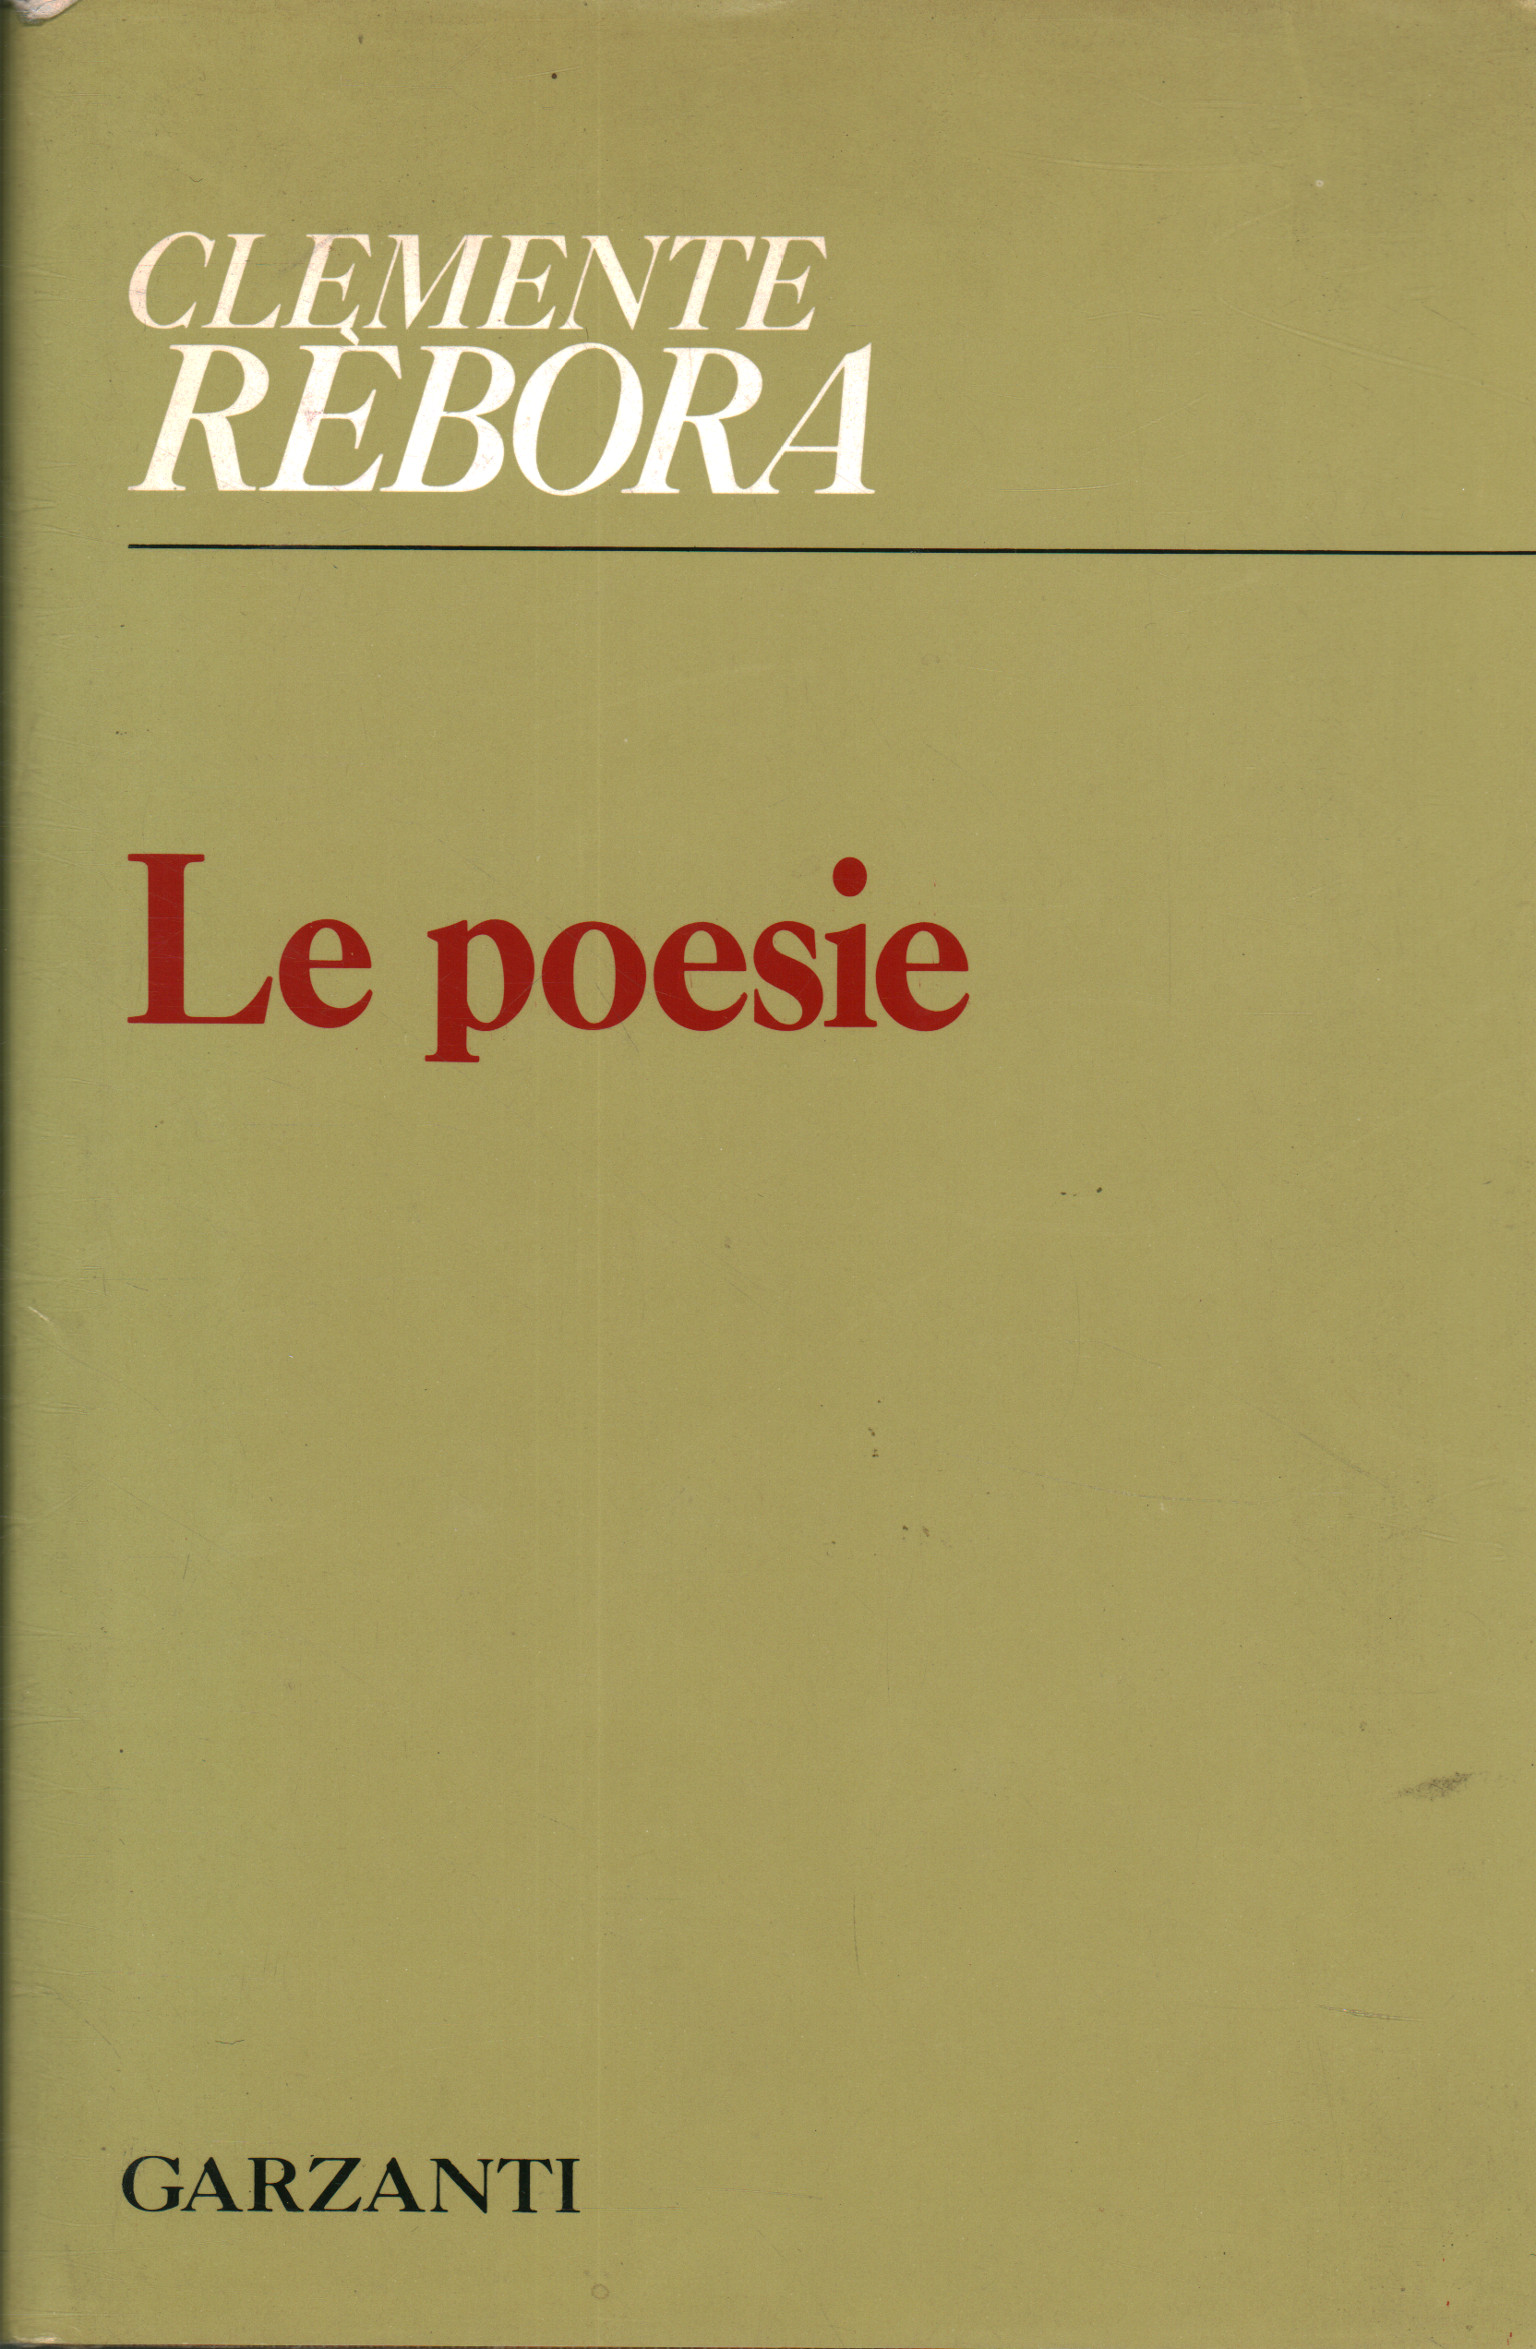 Los poemas (1913-1957)